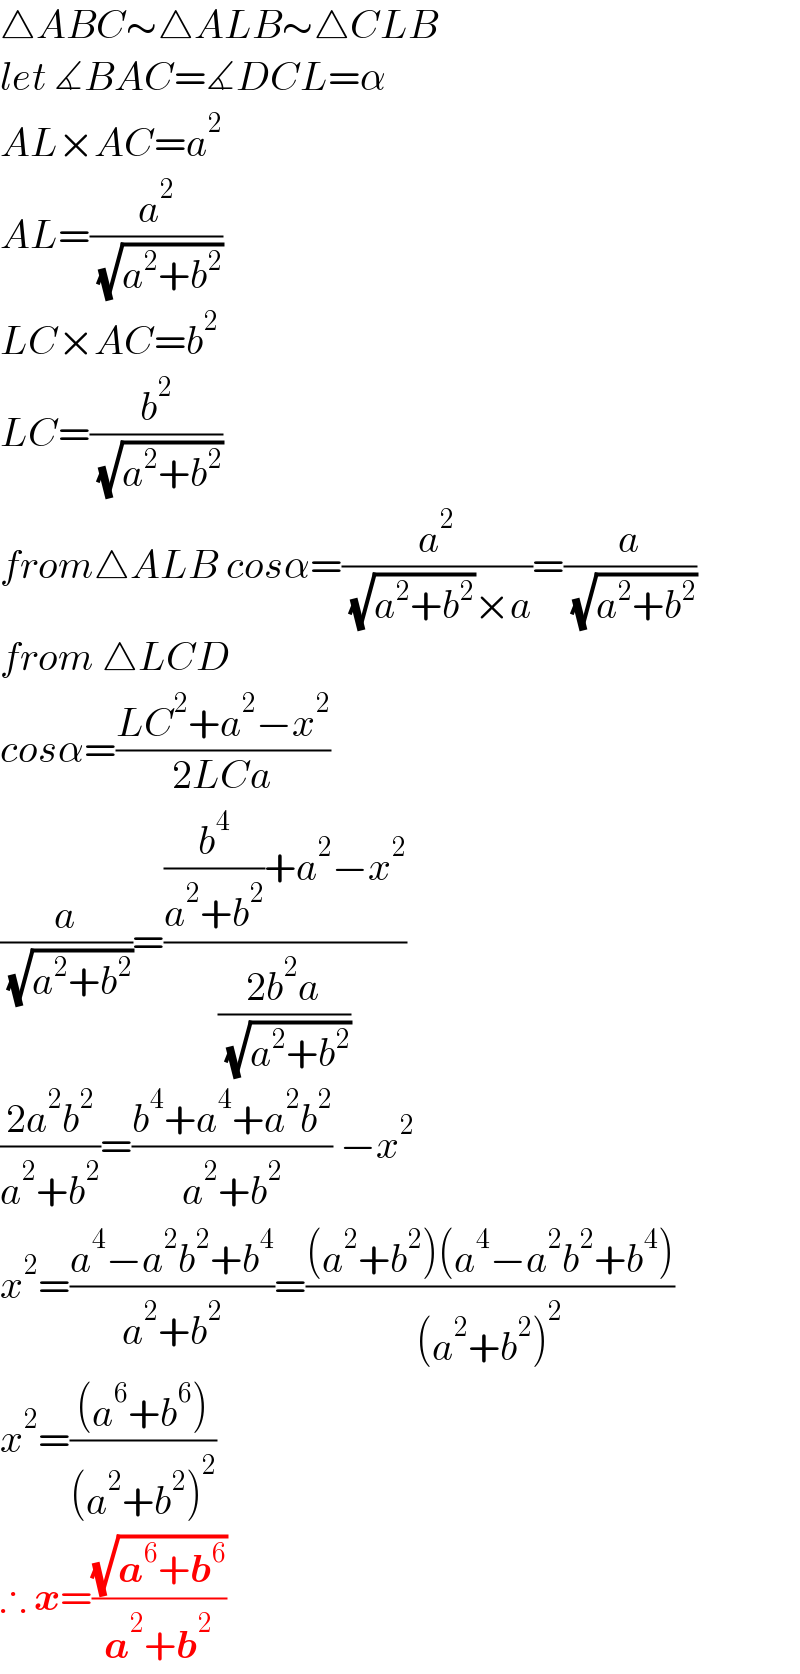 △ABC∼△ALB∼△CLB  let ∡BAC=∡DCL=α  AL×AC=a^2   AL=(a^2 /( (√(a^2 +b^2 ))))  LC×AC=b^2   LC=(b^2 /( (√(a^2 +b^2 ))))  from△ALB cosα=(a^2 /( (√(a^2 +b^2 ))×a))=(a/( (√(a^2 +b^2 ))))  from △LCD   cosα=((LC^2 +a^2 −x^2 )/(2LCa))  (a/( (√(a^2 +b^2 ))))=(((b^4 /(a^2 +b^2 ))+a^2 −x^2 )/((2b^2 a)/( (√(a^2 +b^2 )))))  ((2a^2 b^2 )/(a^2 +b^2 ))=((b^4 +a^4 +a^2 b^2 )/(a^2 +b^2 )) −x^2   x^2 =((a^4 −a^2 b^2 +b^4 )/(a^2 +b^2 ))=(((a^2 +b^2 )(a^4 −a^2 b^2 +b^4 ))/((a^2 +b^2 )^2 ))  x^2 =(((a^6 +b^6 ))/((a^2 +b^2 )^2 ))  ∴ x=((√(a^6 +b^6 ))/(a^2 +b^2 ))  